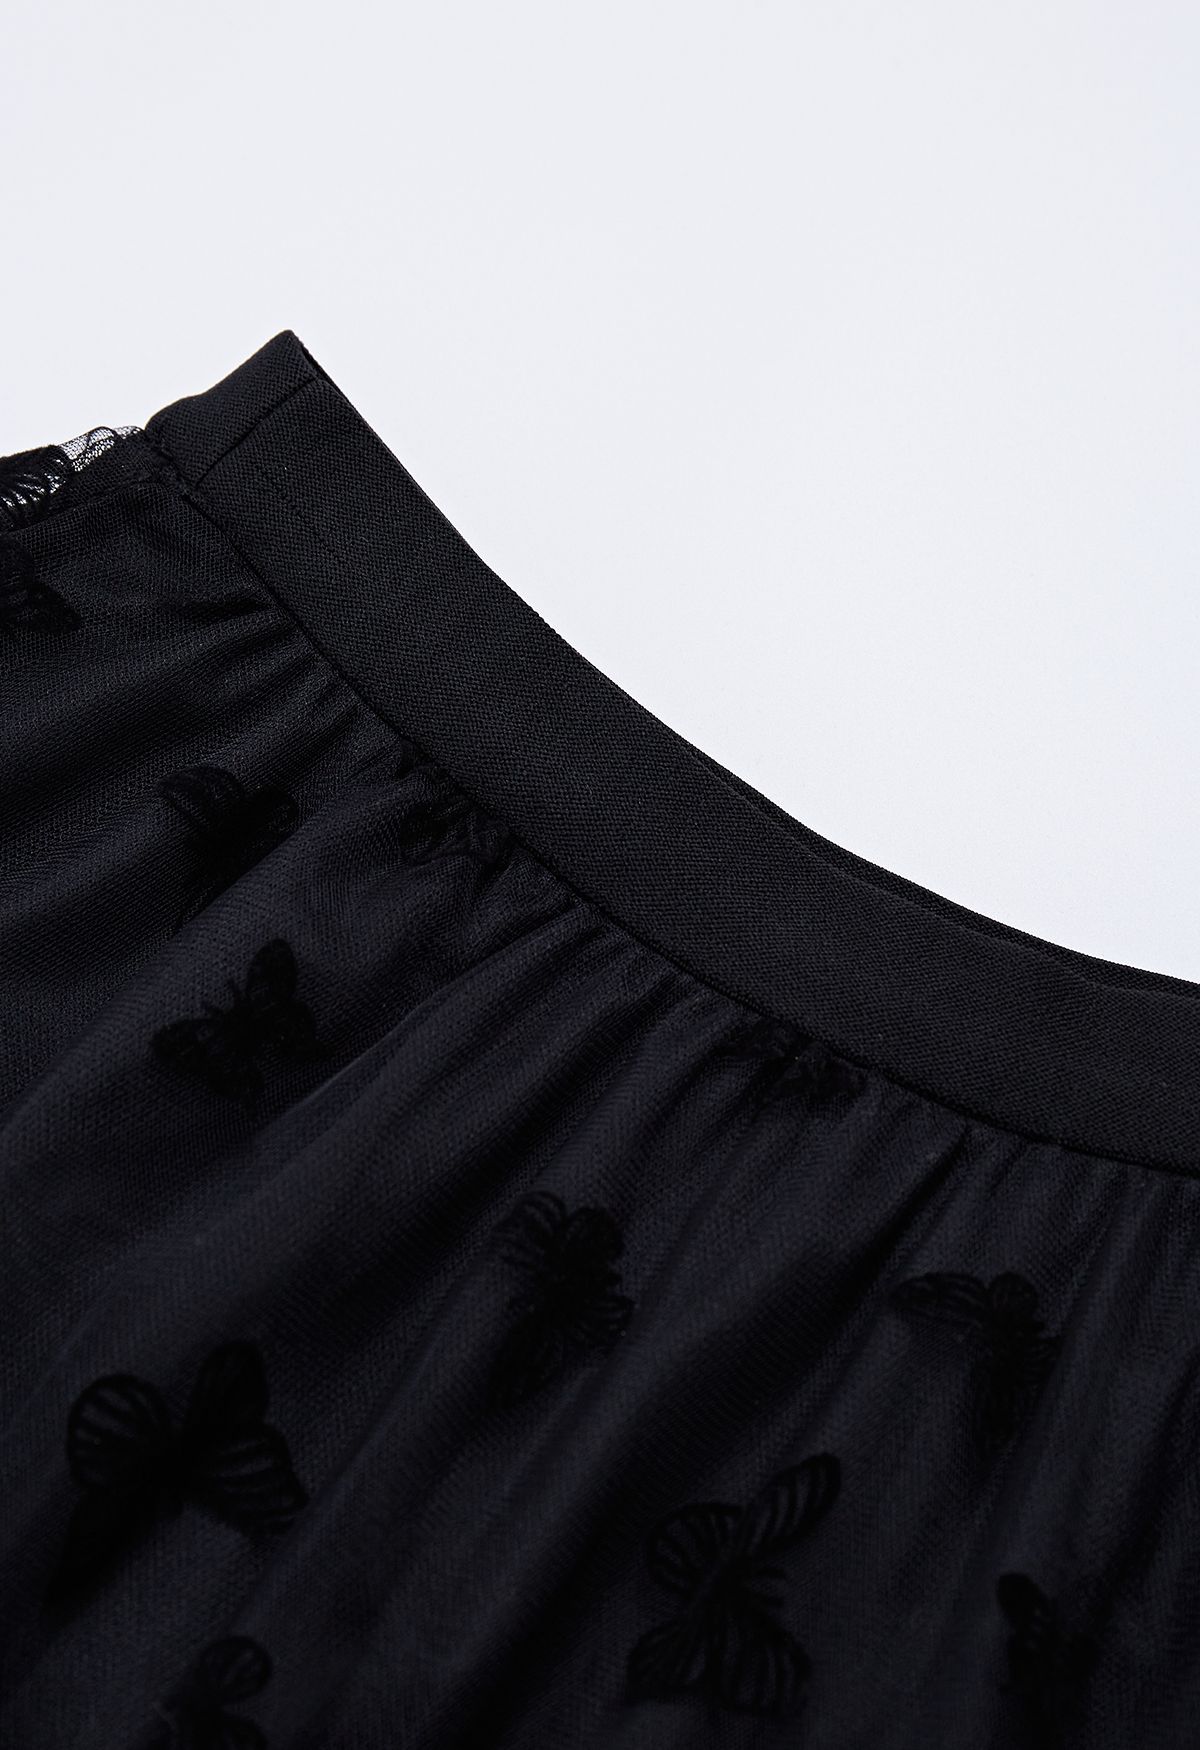 Velvet Butterfly Mesh Tulle Midi Skirt in Black